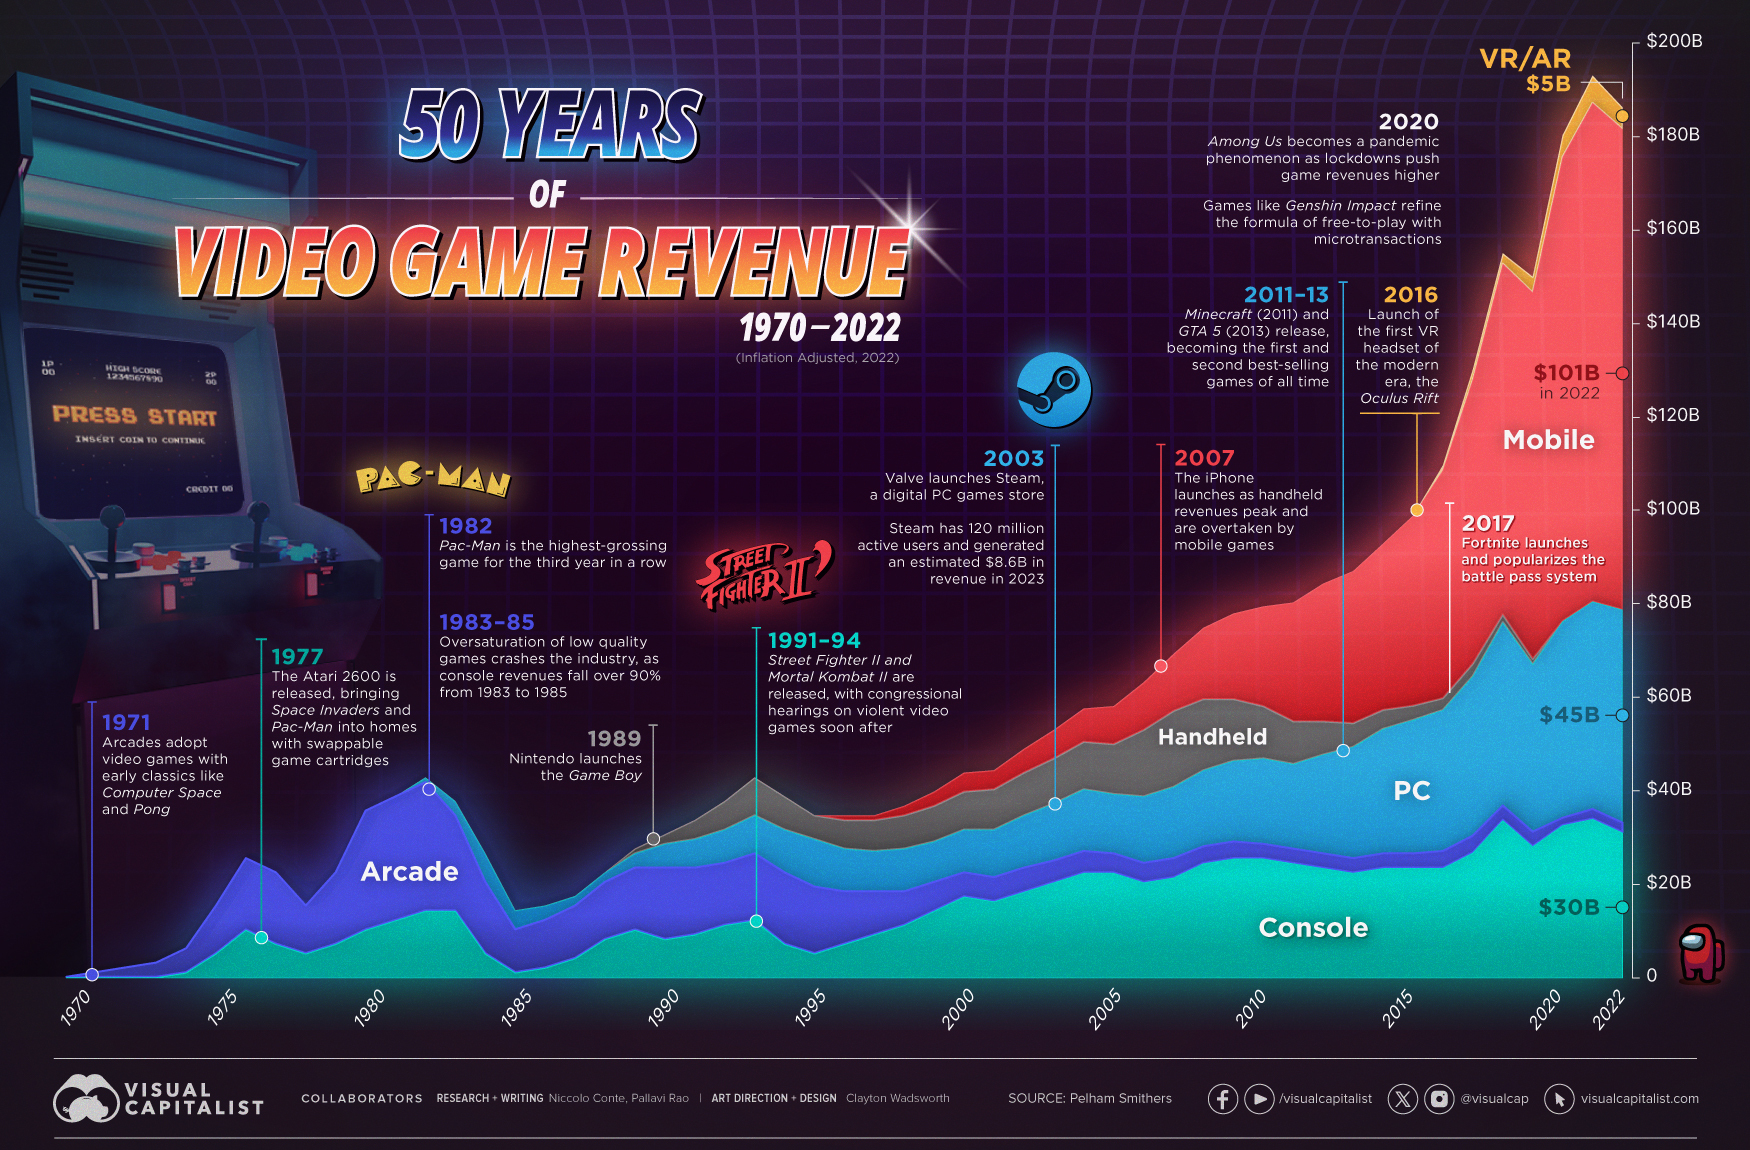 Revivez 50 ans de jeu vidéo, en revenus et en plateforme... Oui, le mobile est bel et bien devant